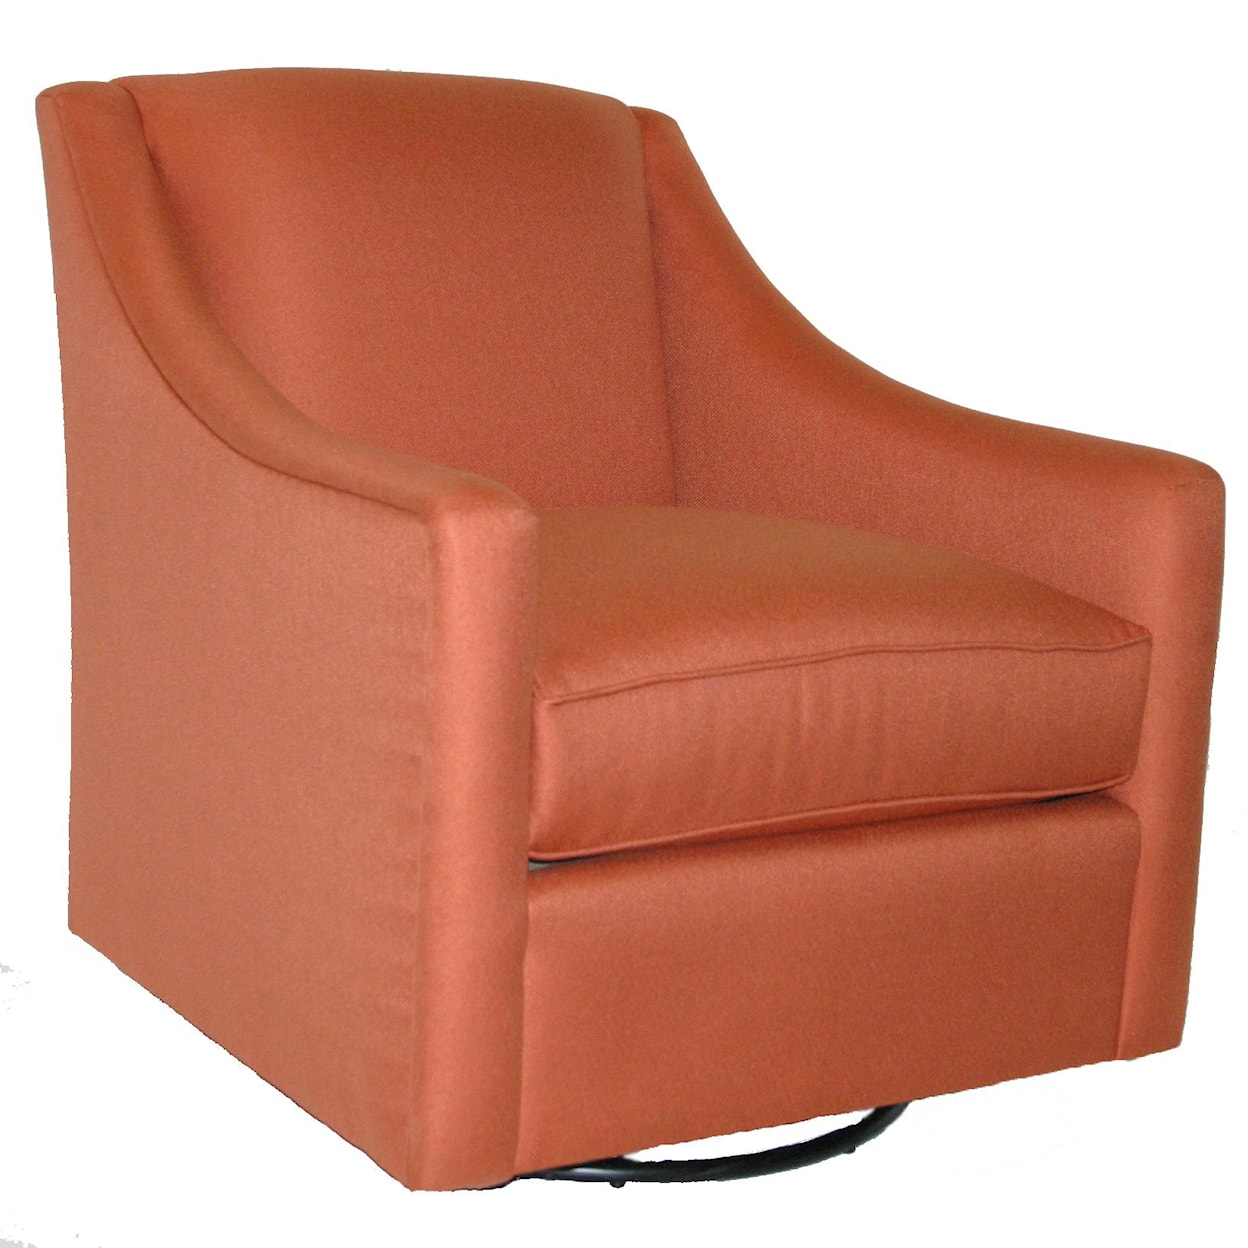 Bassett 1045 Swivel Chair